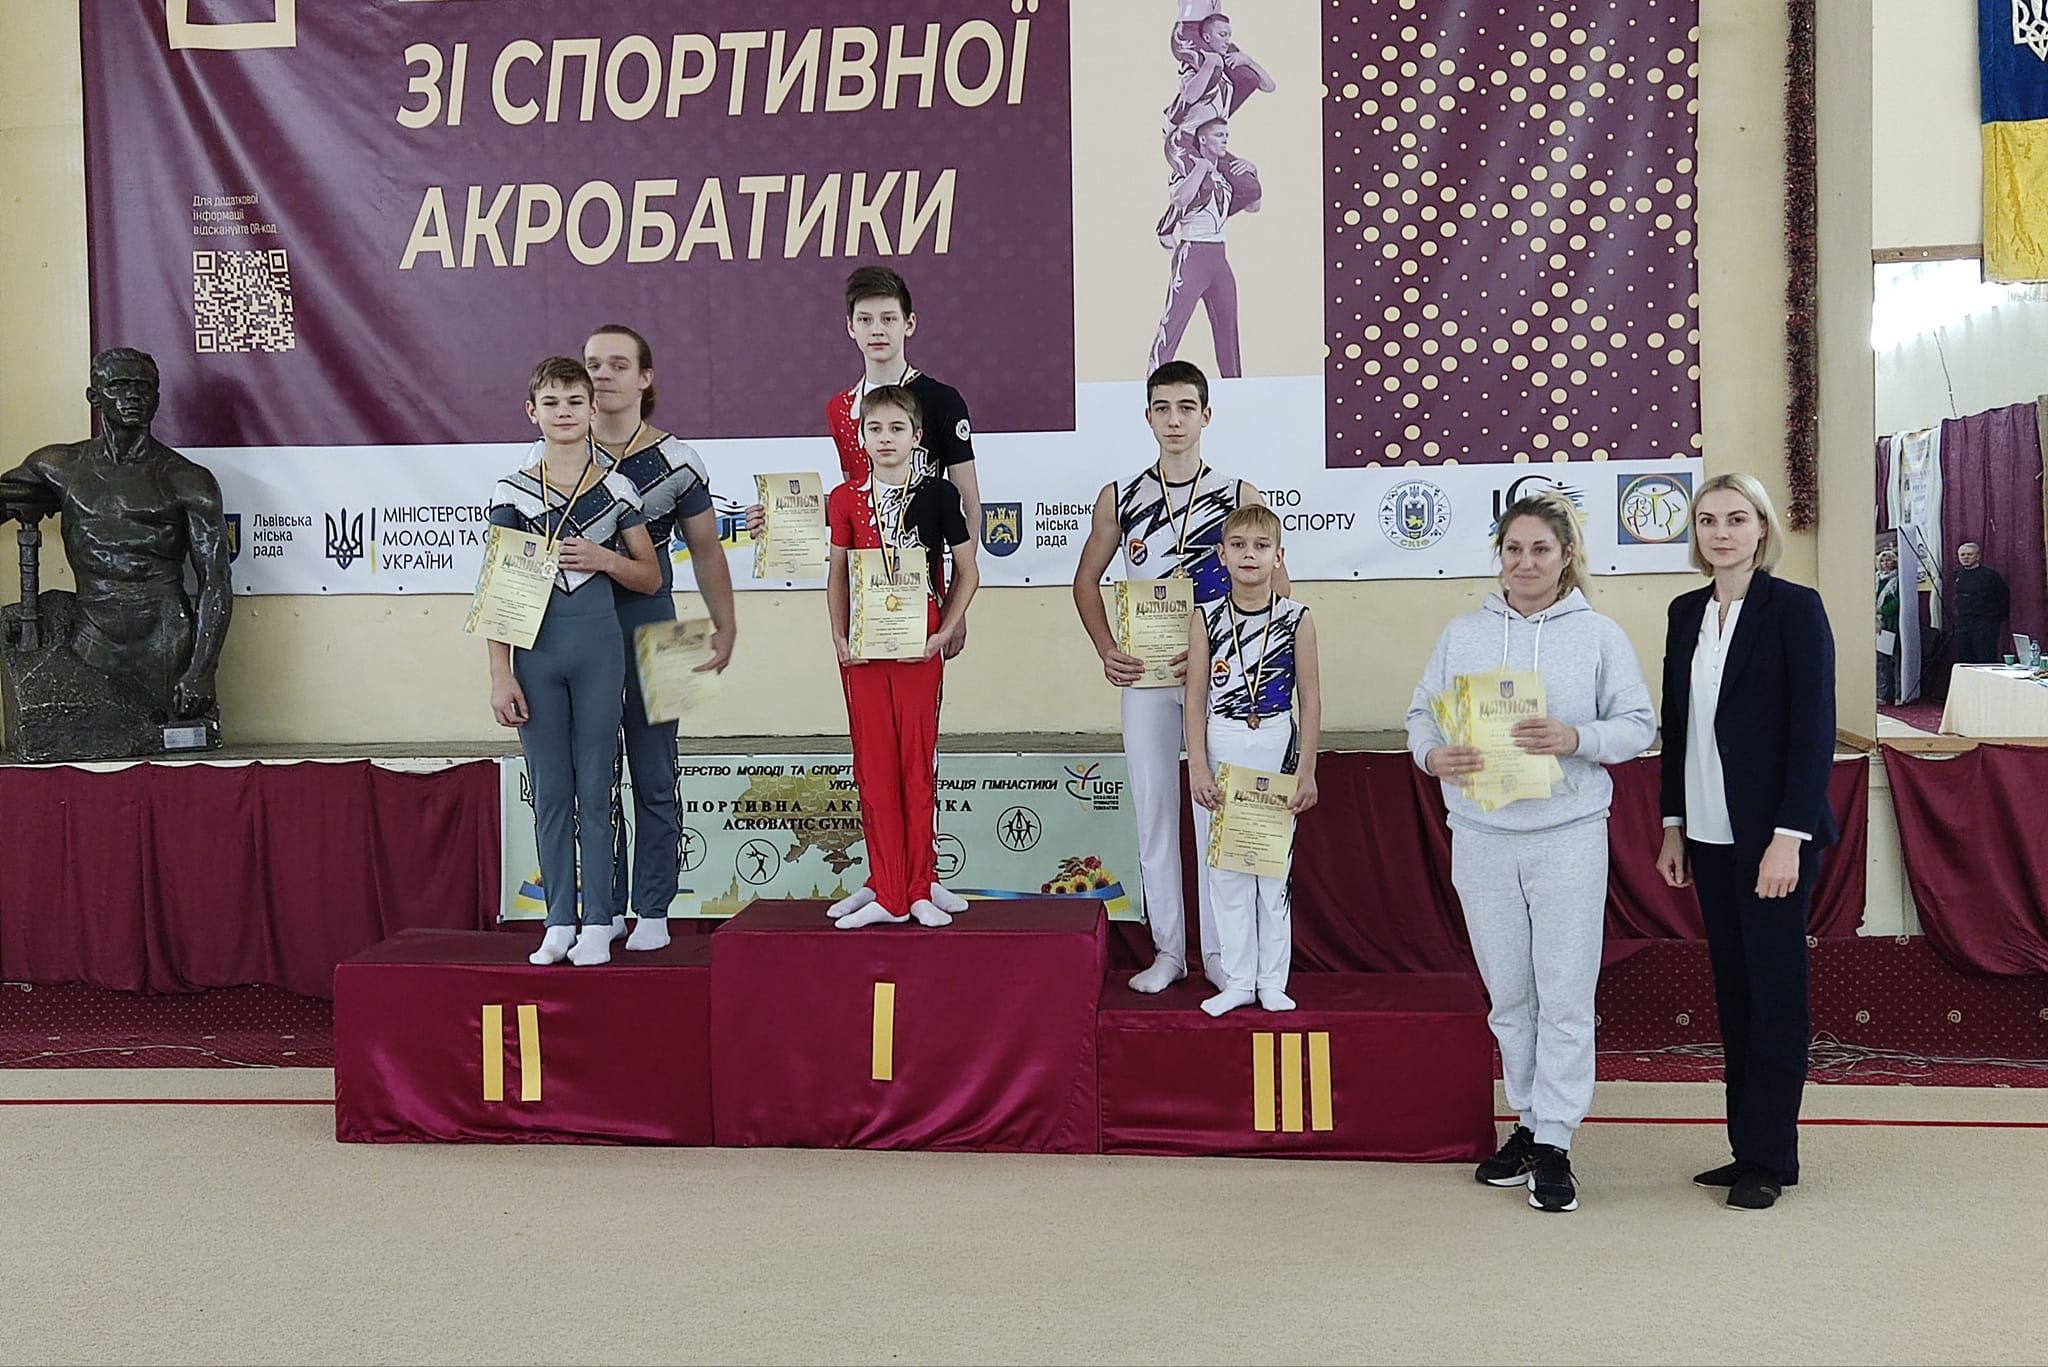 Повернулись додому Чемпіонками України: аккерманські акробати здобули перемогу та призові місця